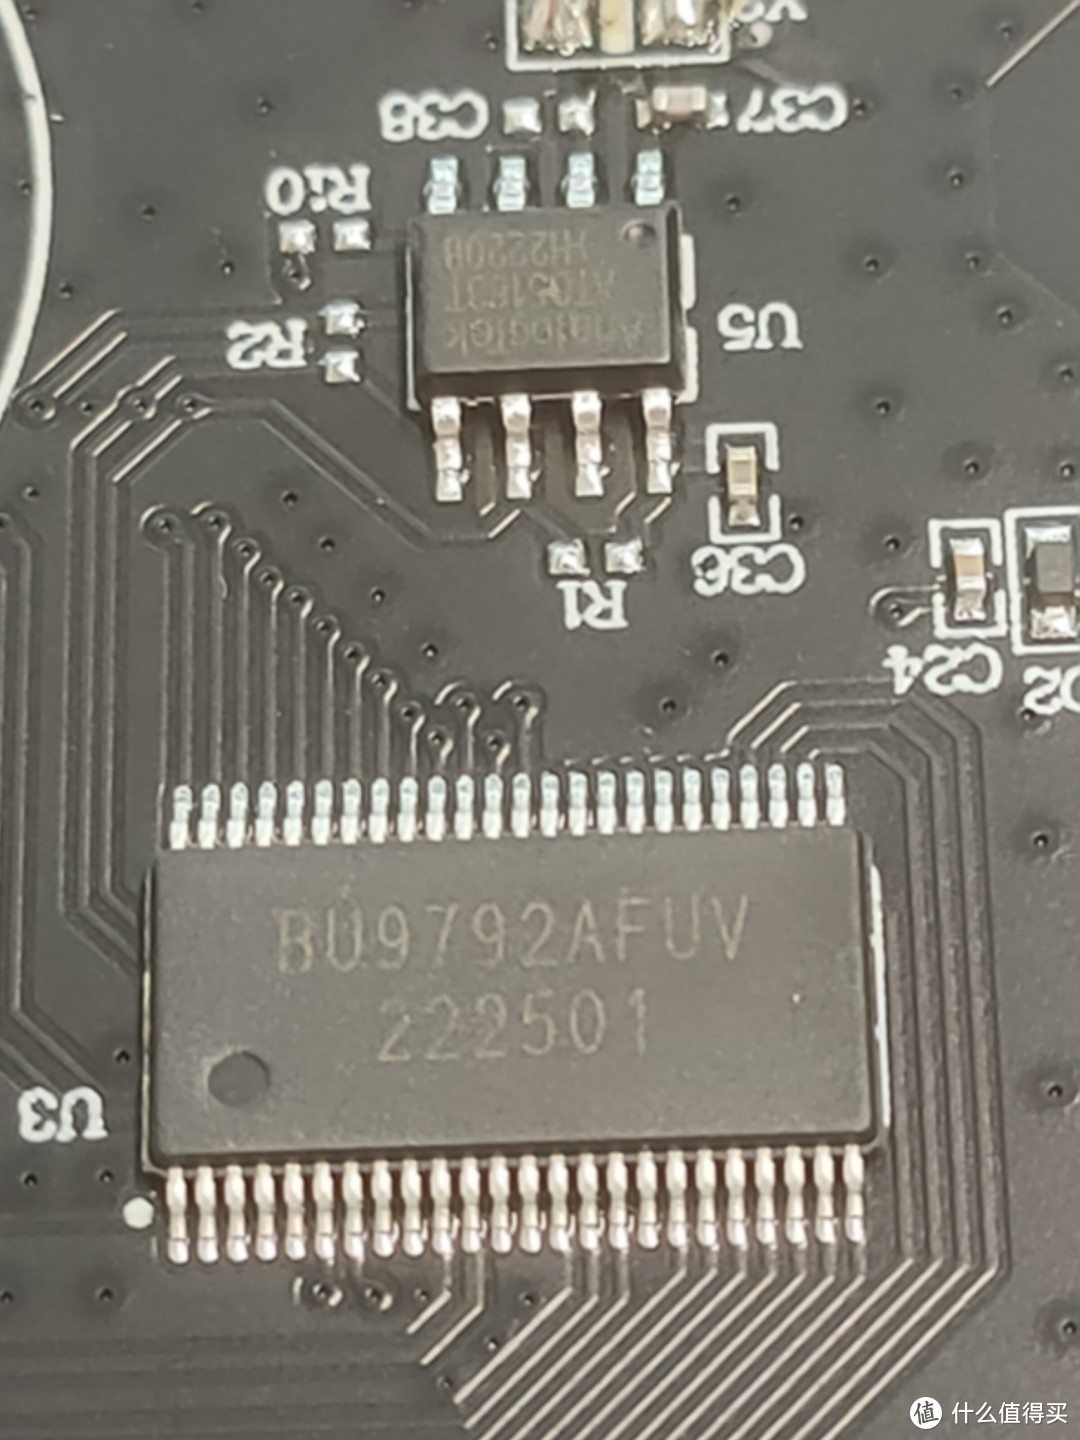 1号芯片中爱微显示驱动芯片BU9792AFUV